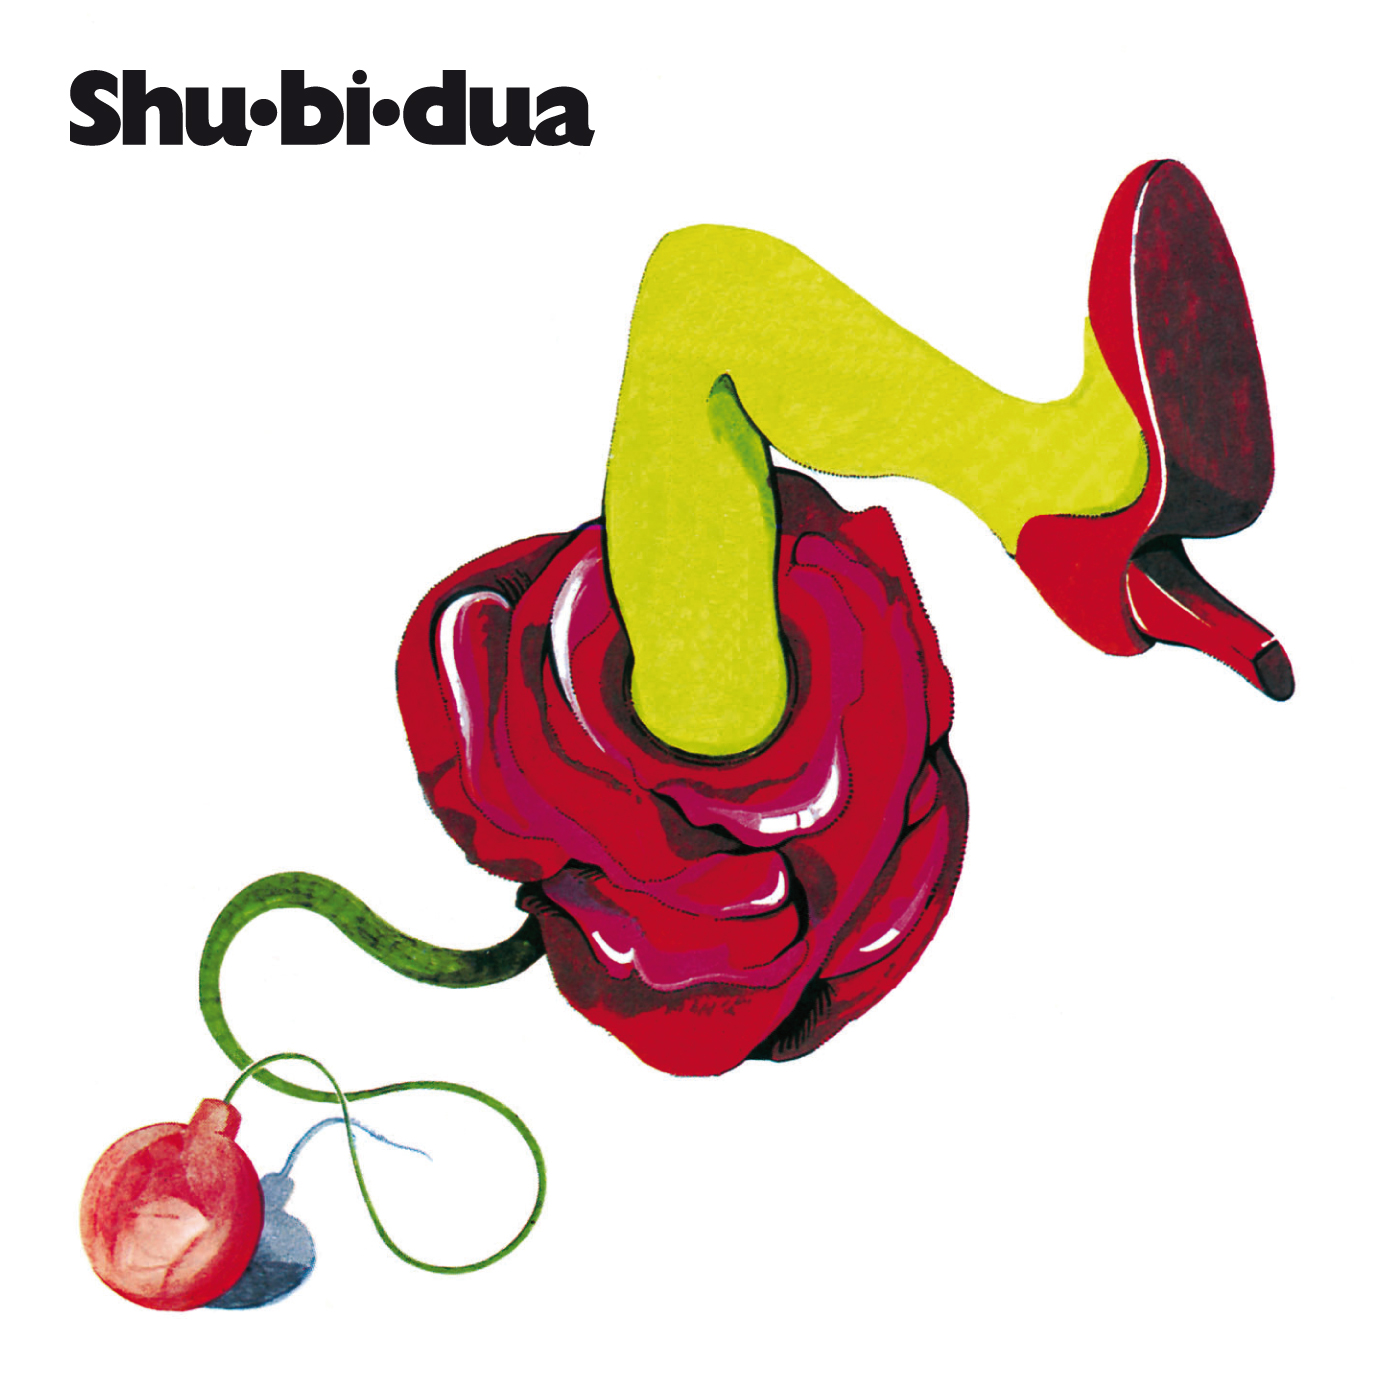 SHU-BI-DUA Album cover